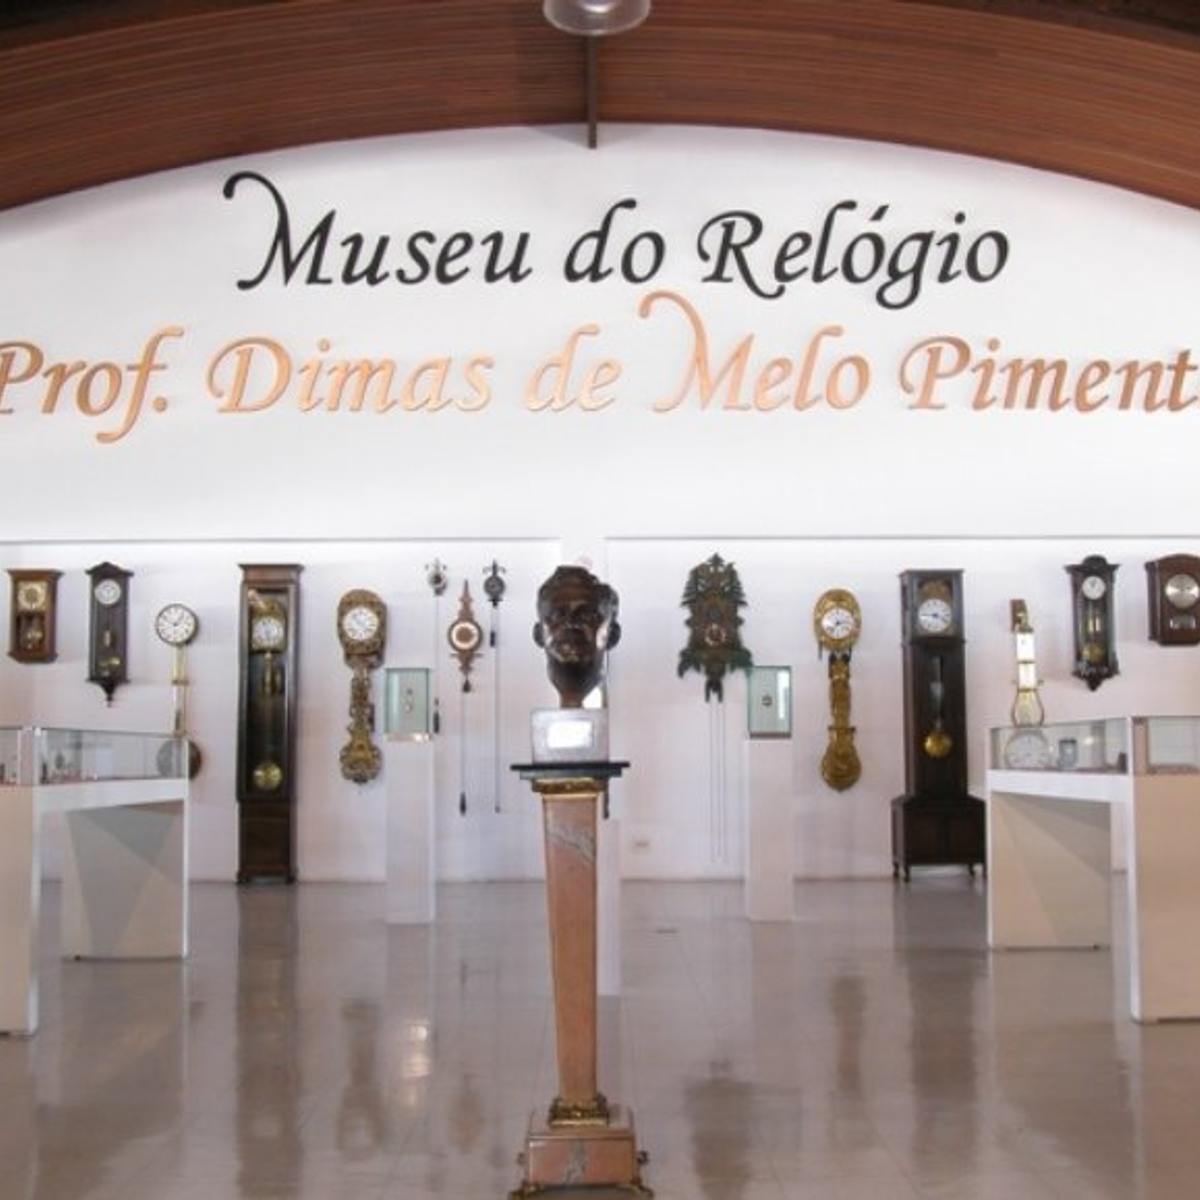 The prof. Dimas de melo pimenta clock museum